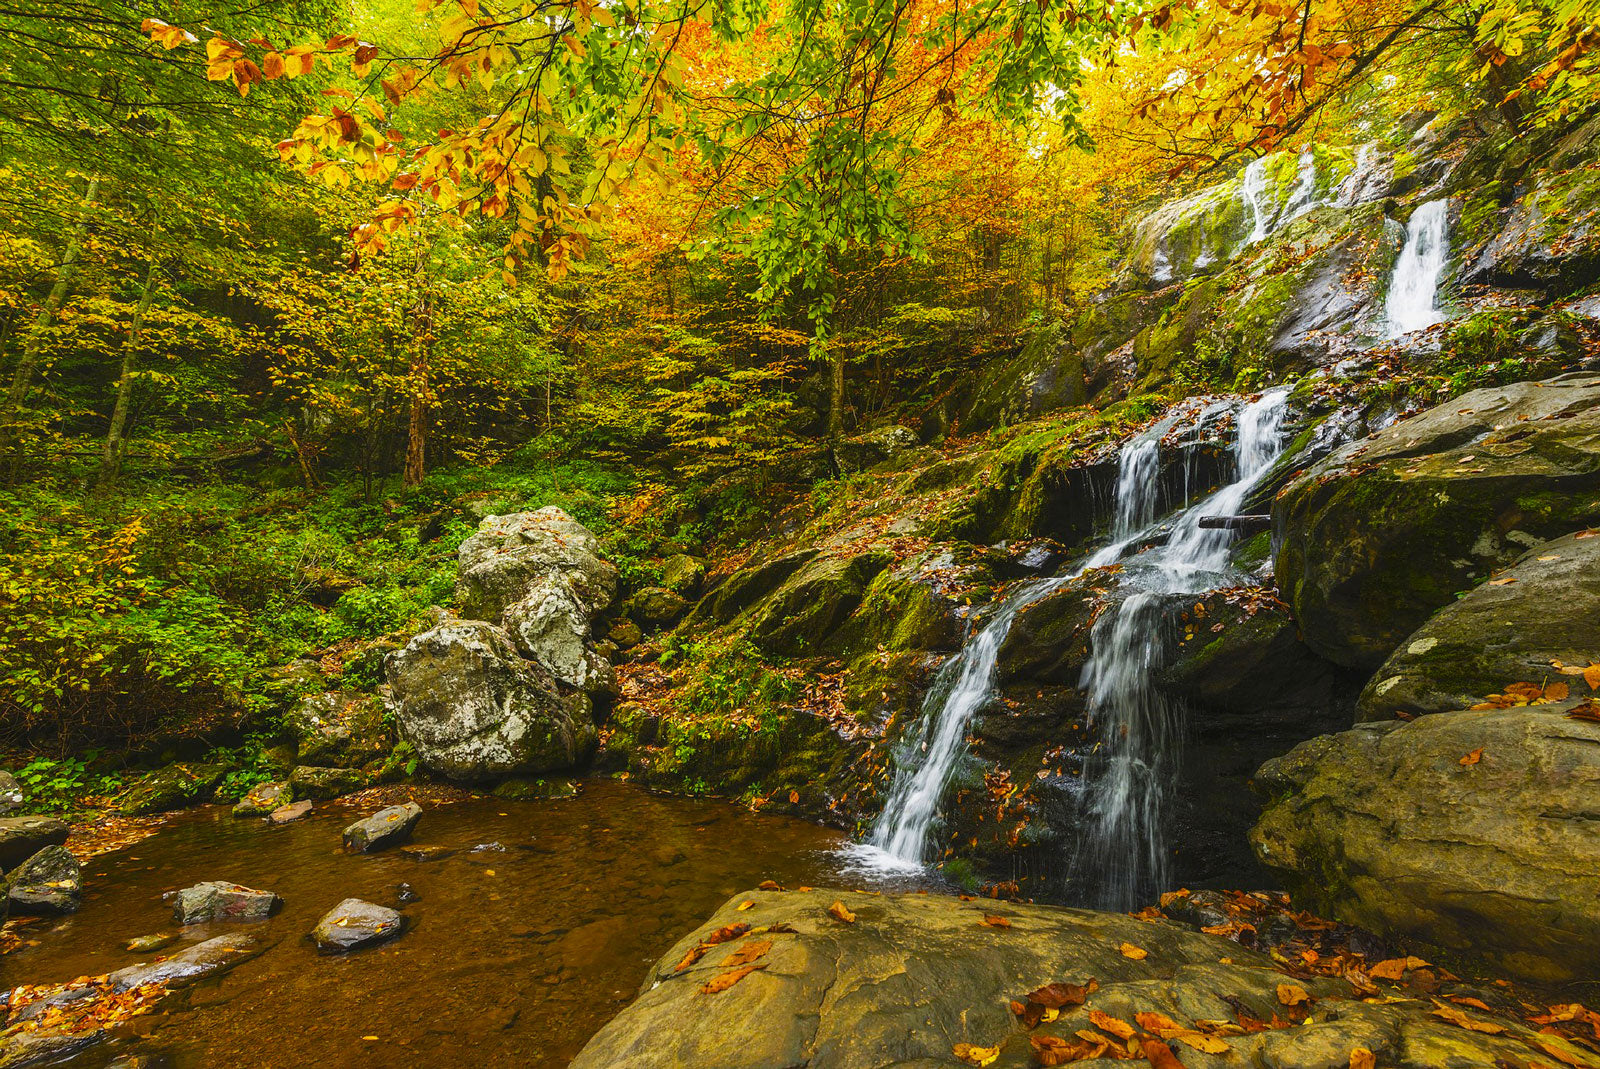 Small waterfall and fall colors at Shenandoah National Park.